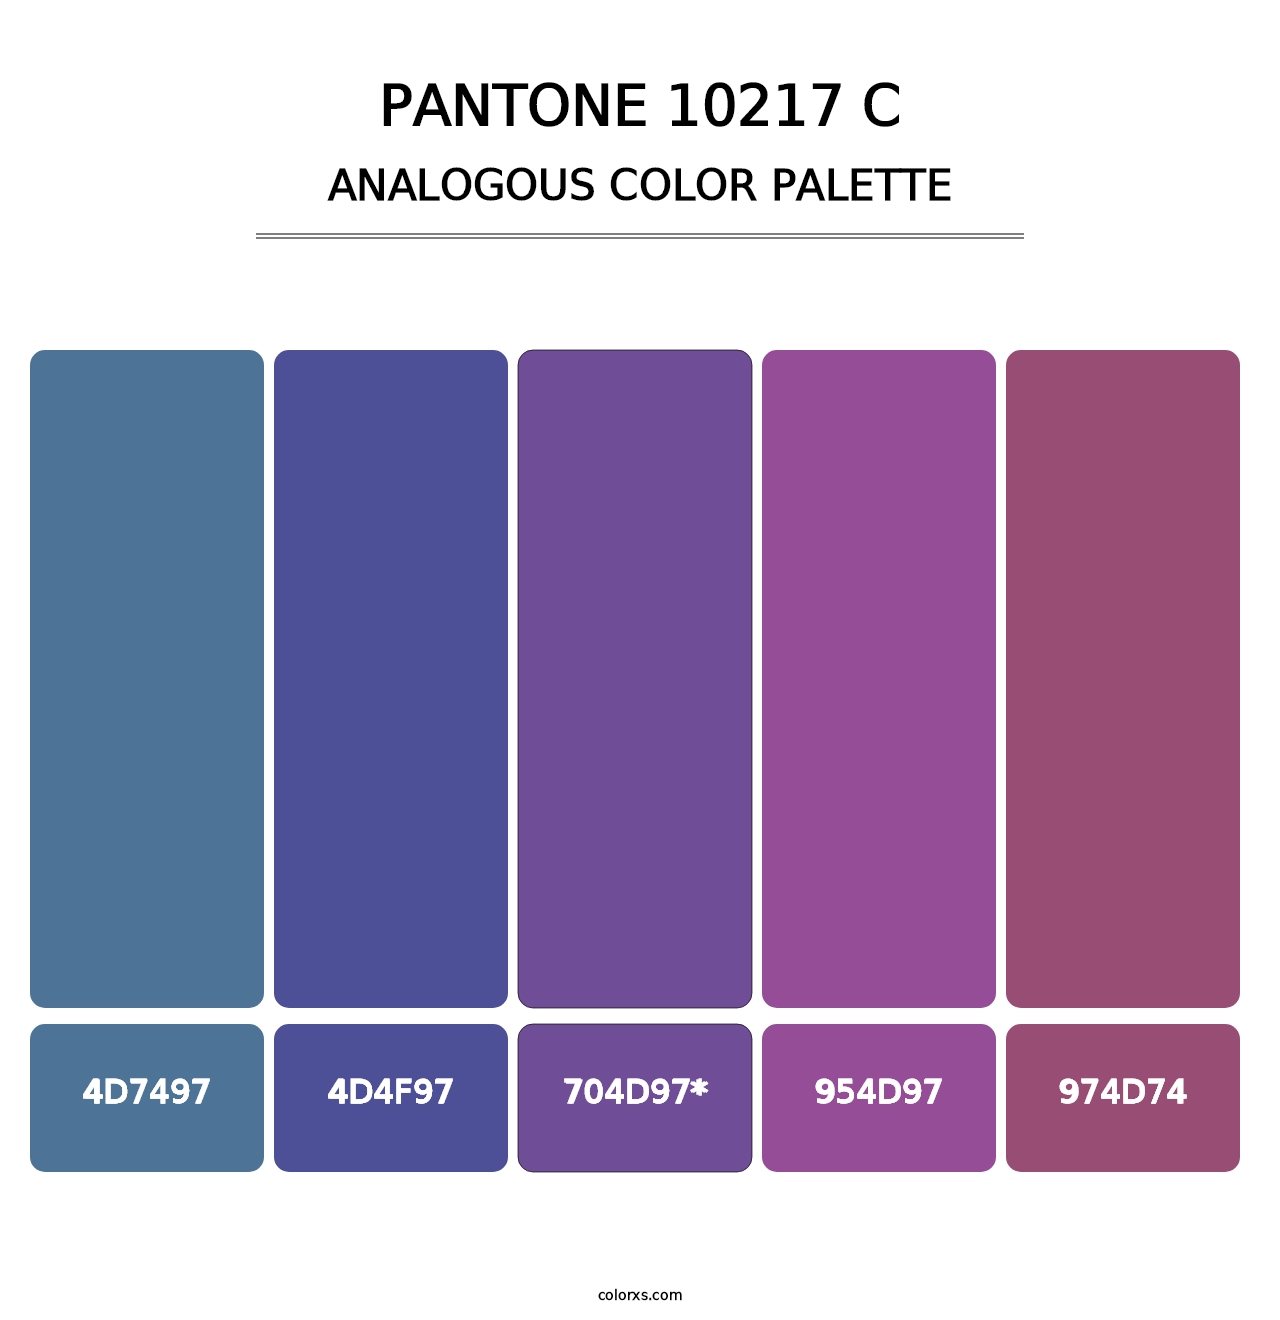 PANTONE 10217 C - Analogous Color Palette